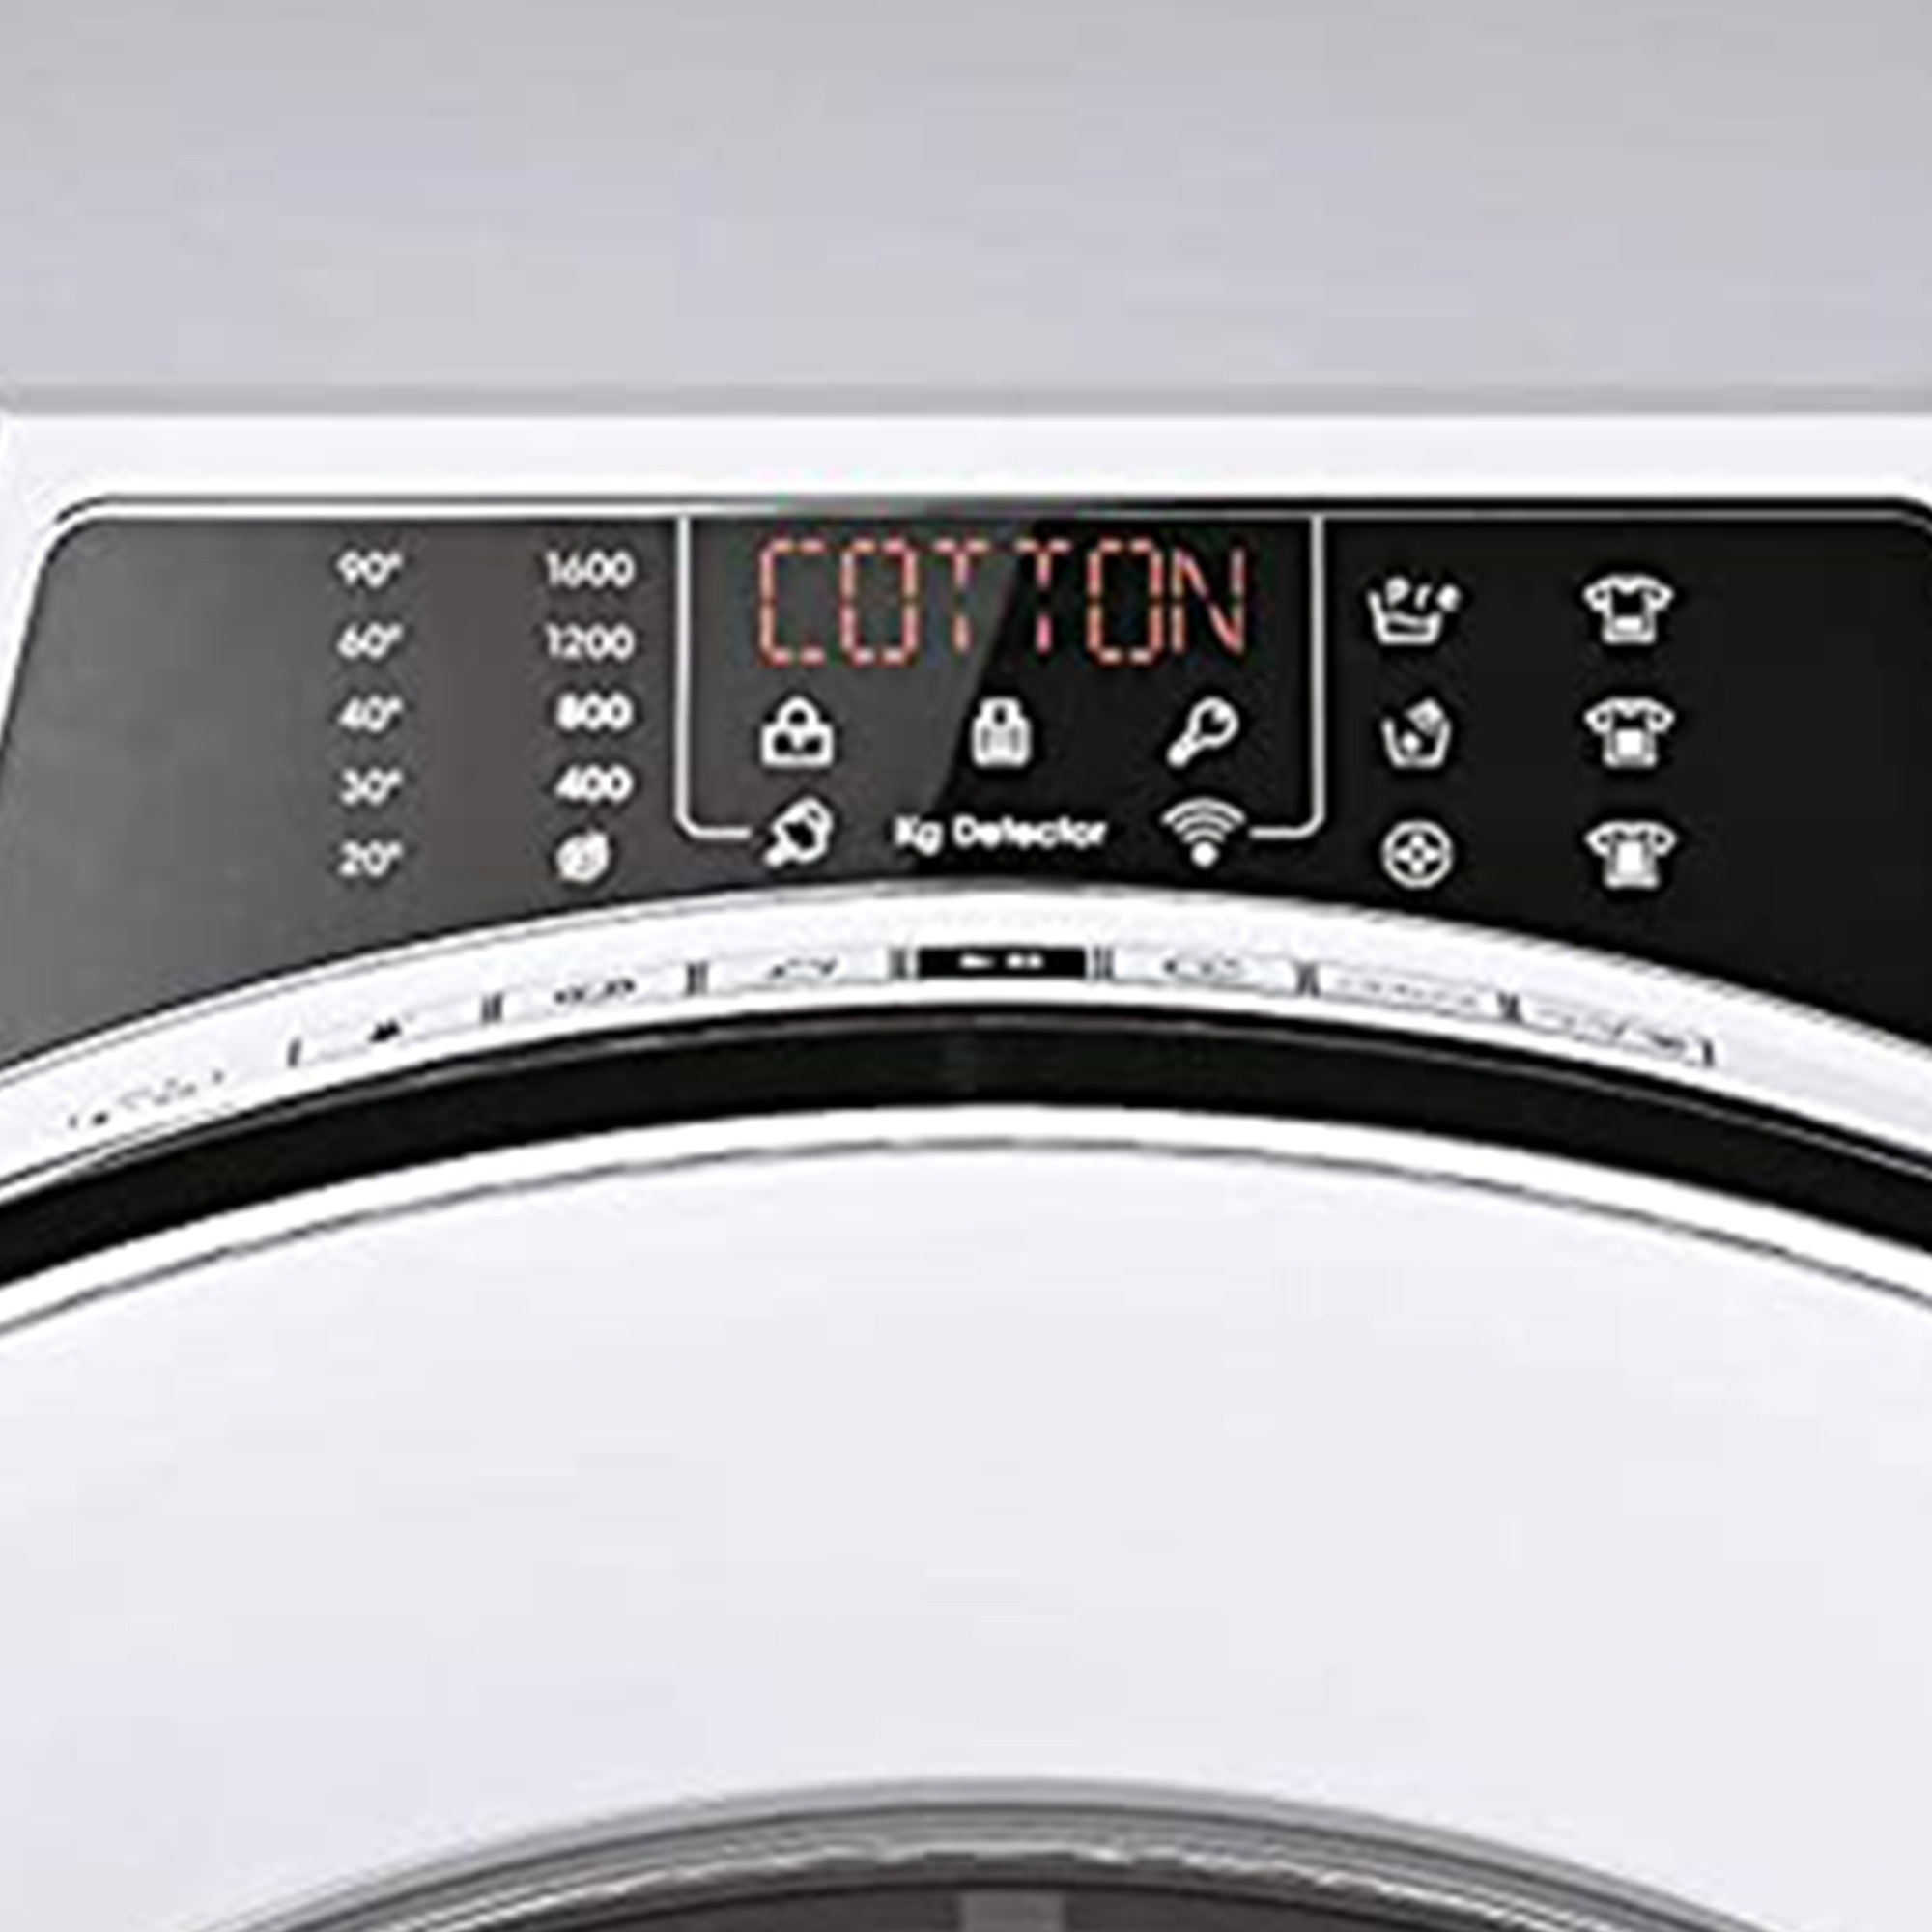 CANDY A) kg, (10 RO16106DWMCE/1-S Waschmaschine